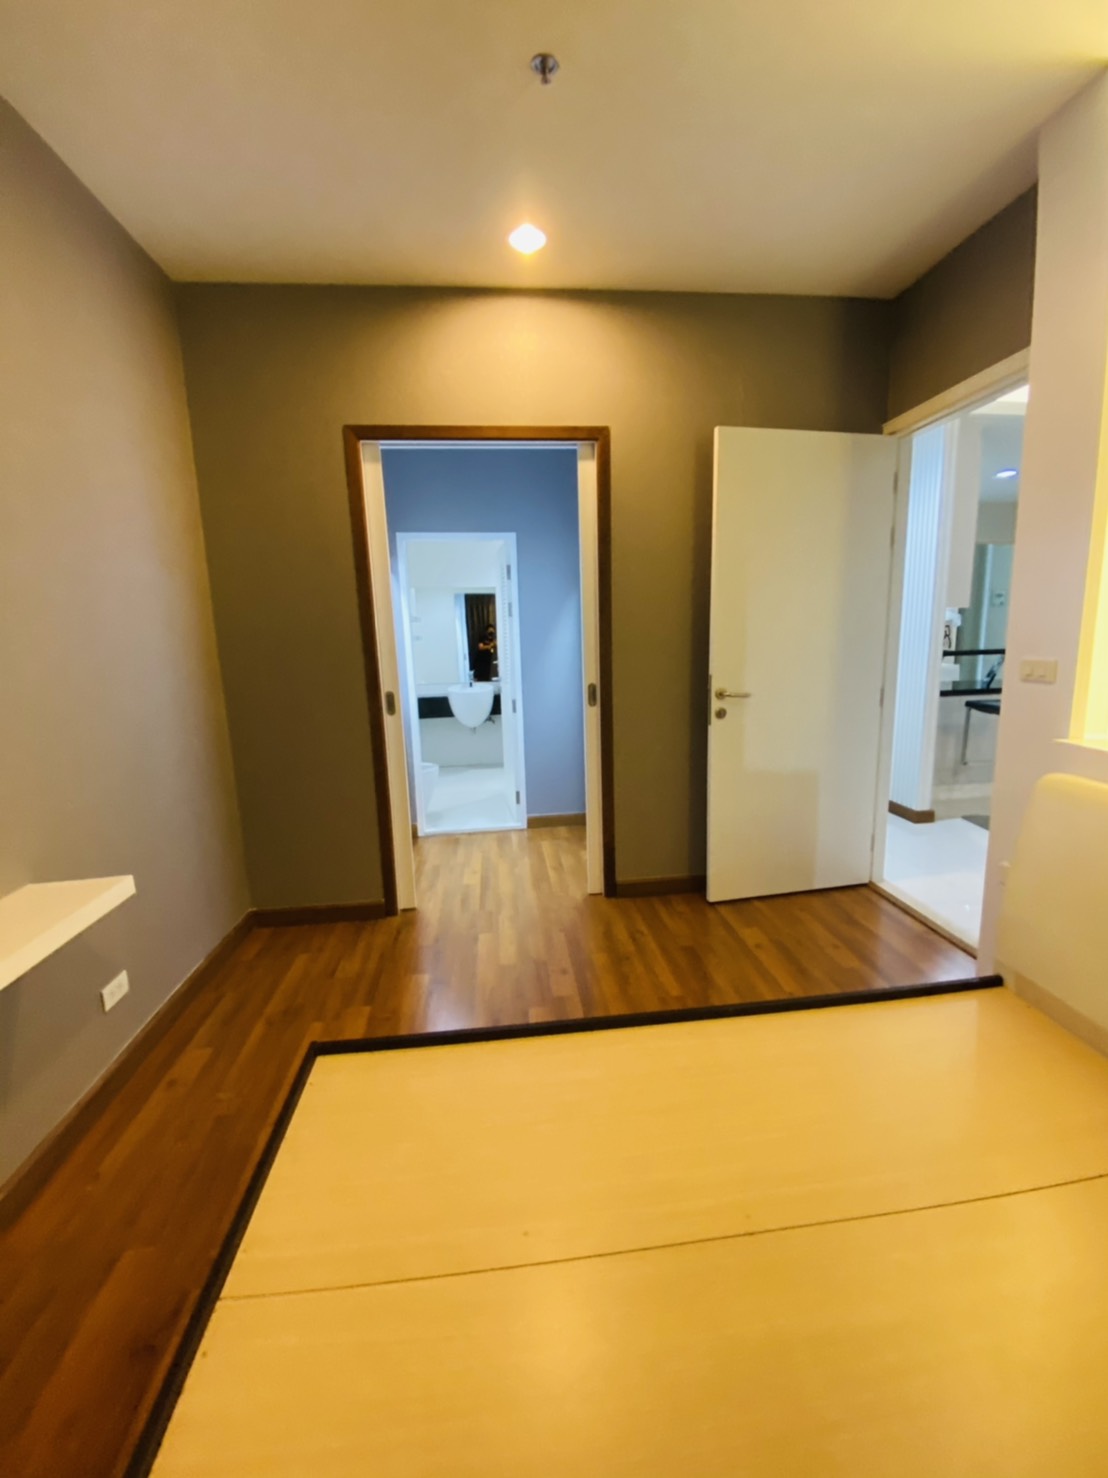 ขายคอนโด The Fourwings Residence . ศรีนครินทร์ พื้นที่ 98 ตารางเมตร 2 ห้องนอน 3 ห้องน้ำ ราคา 7.9 ล้านบาท รูปที่ 1